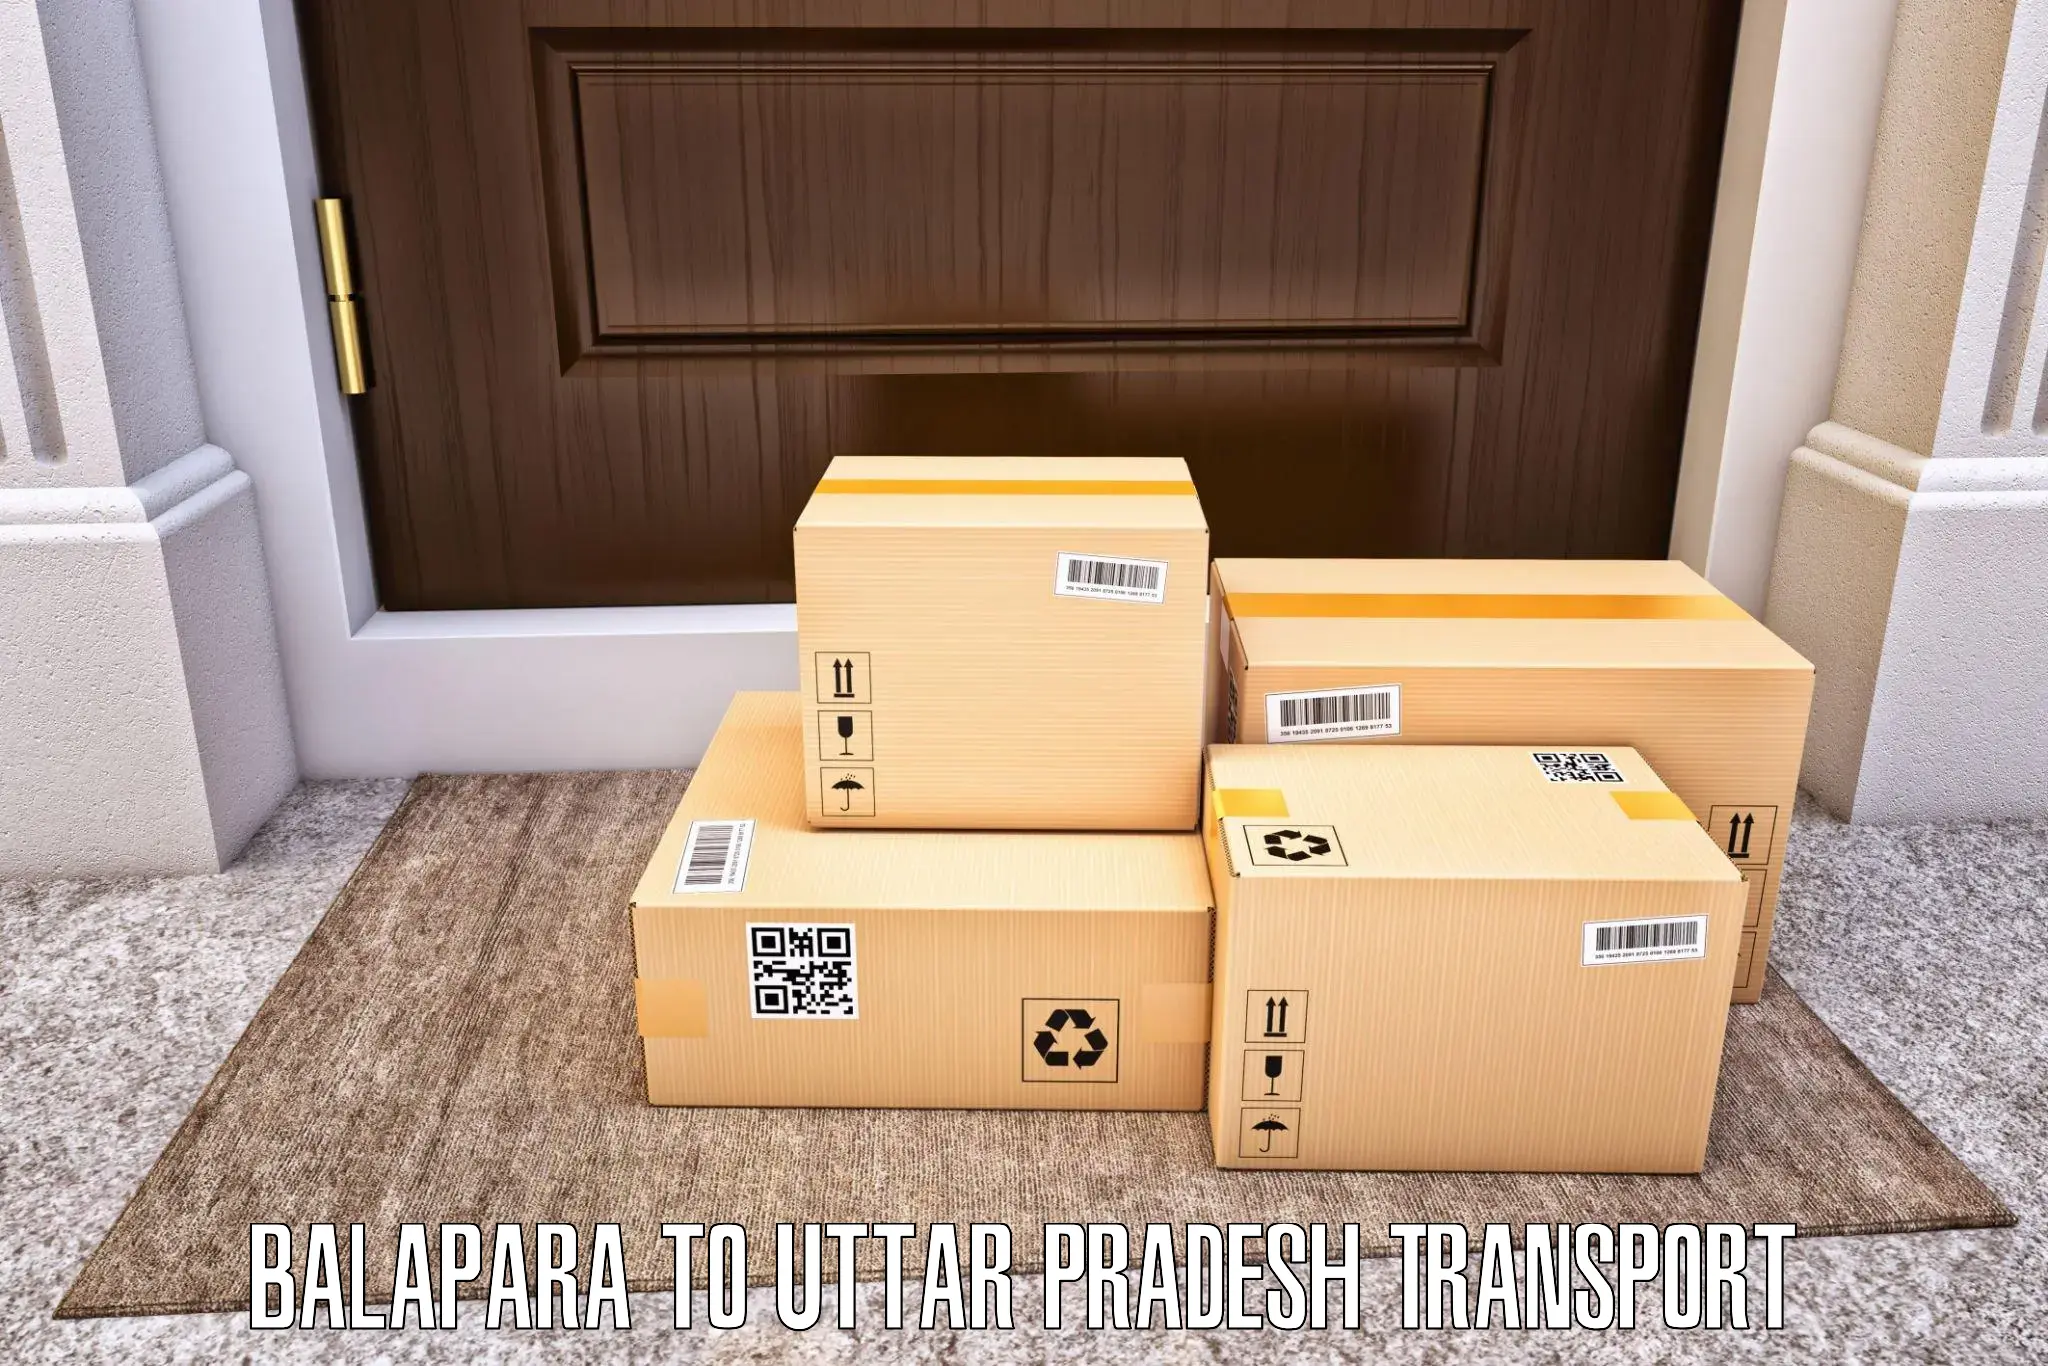 Luggage transport services Balapara to Muzaffarnagar